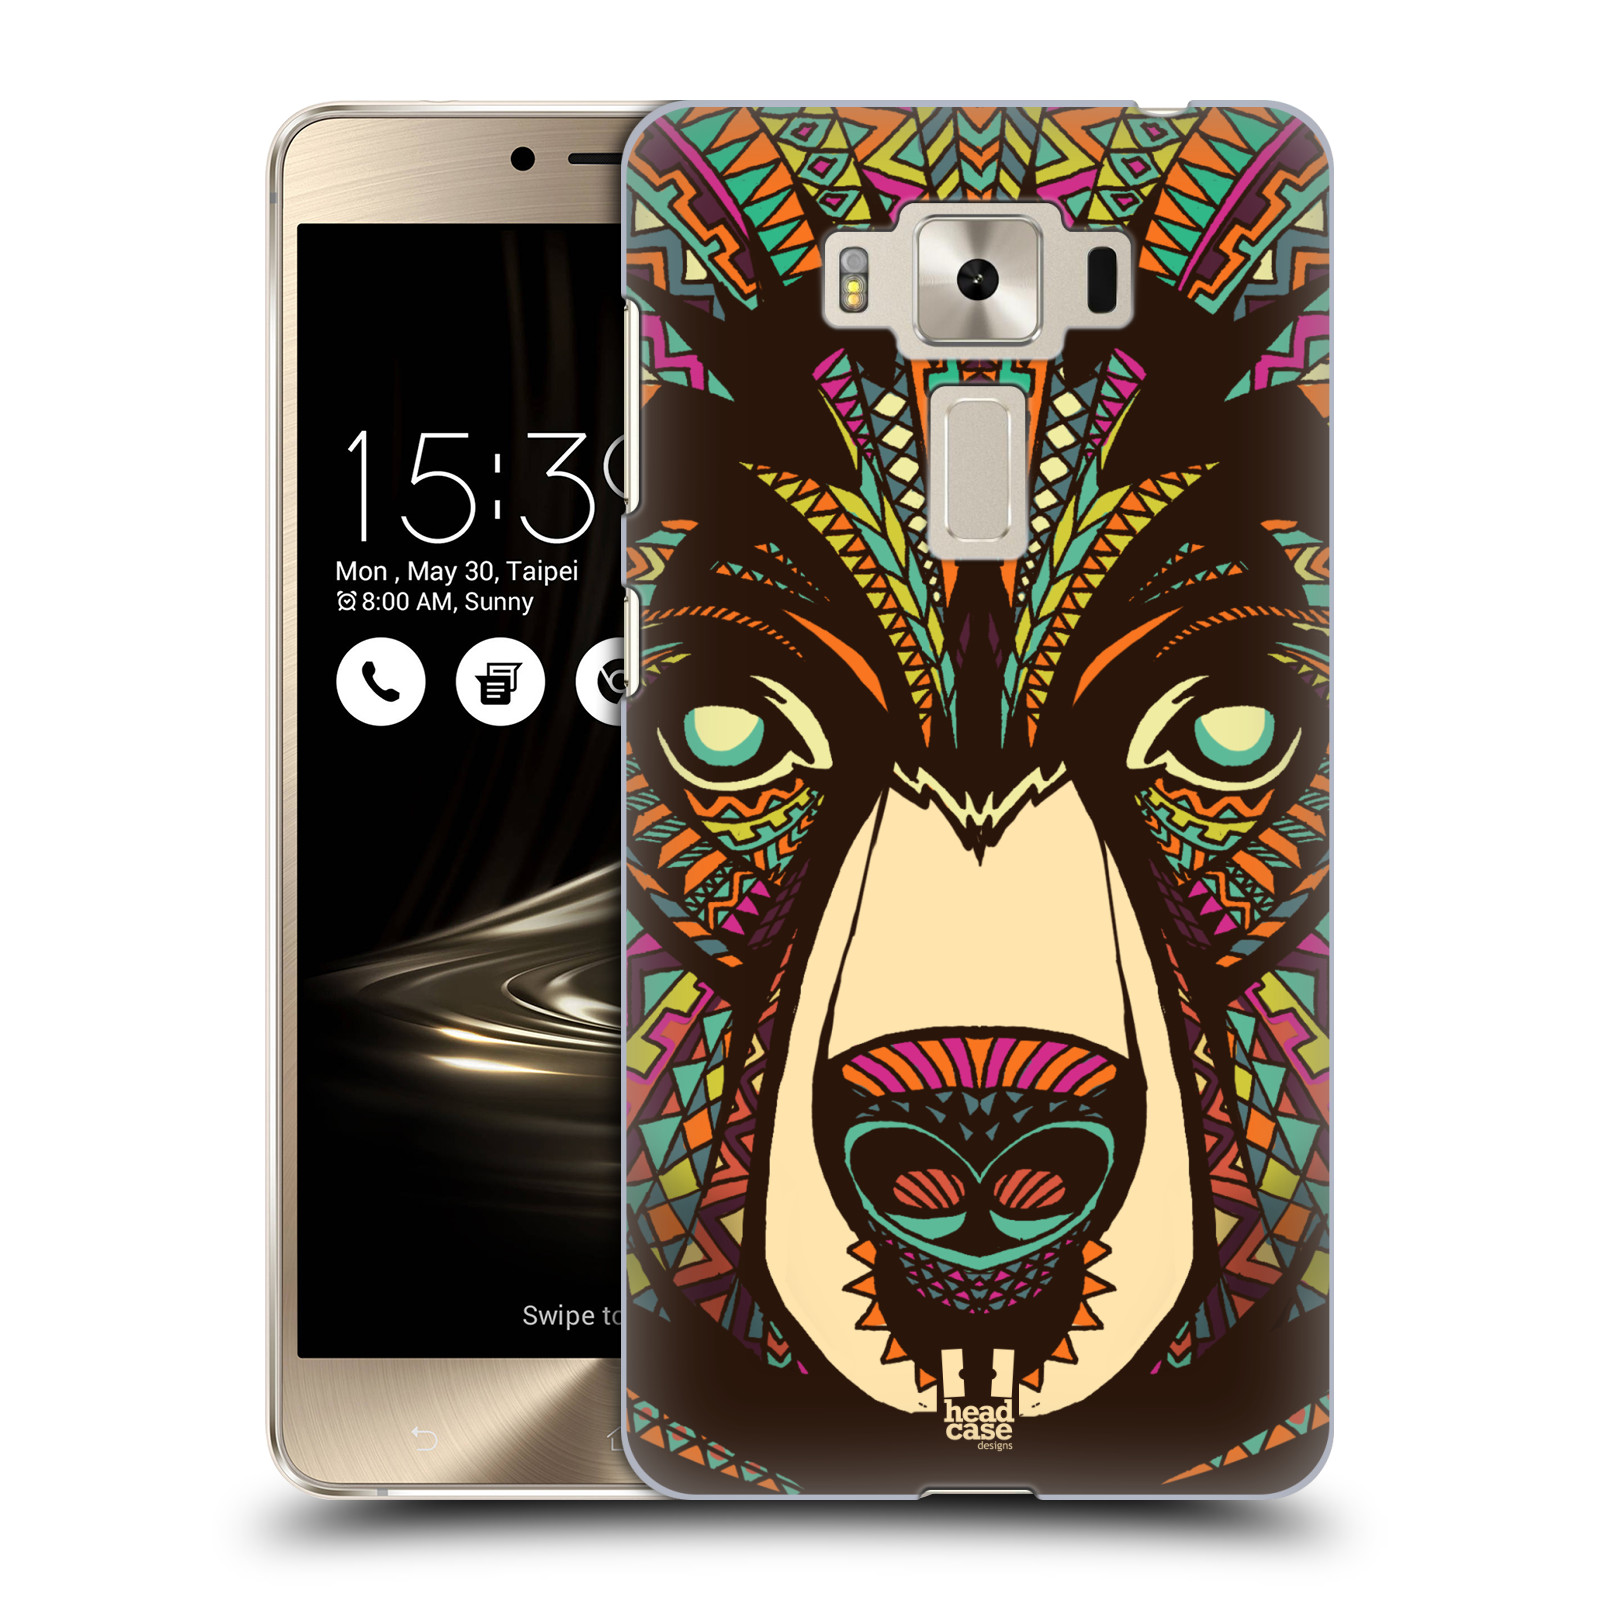 HEAD CASE plastový obal na mobil Asus Zenfone 3 DELUXE ZS550KL vzor Aztécký motiv zvíře medvěd